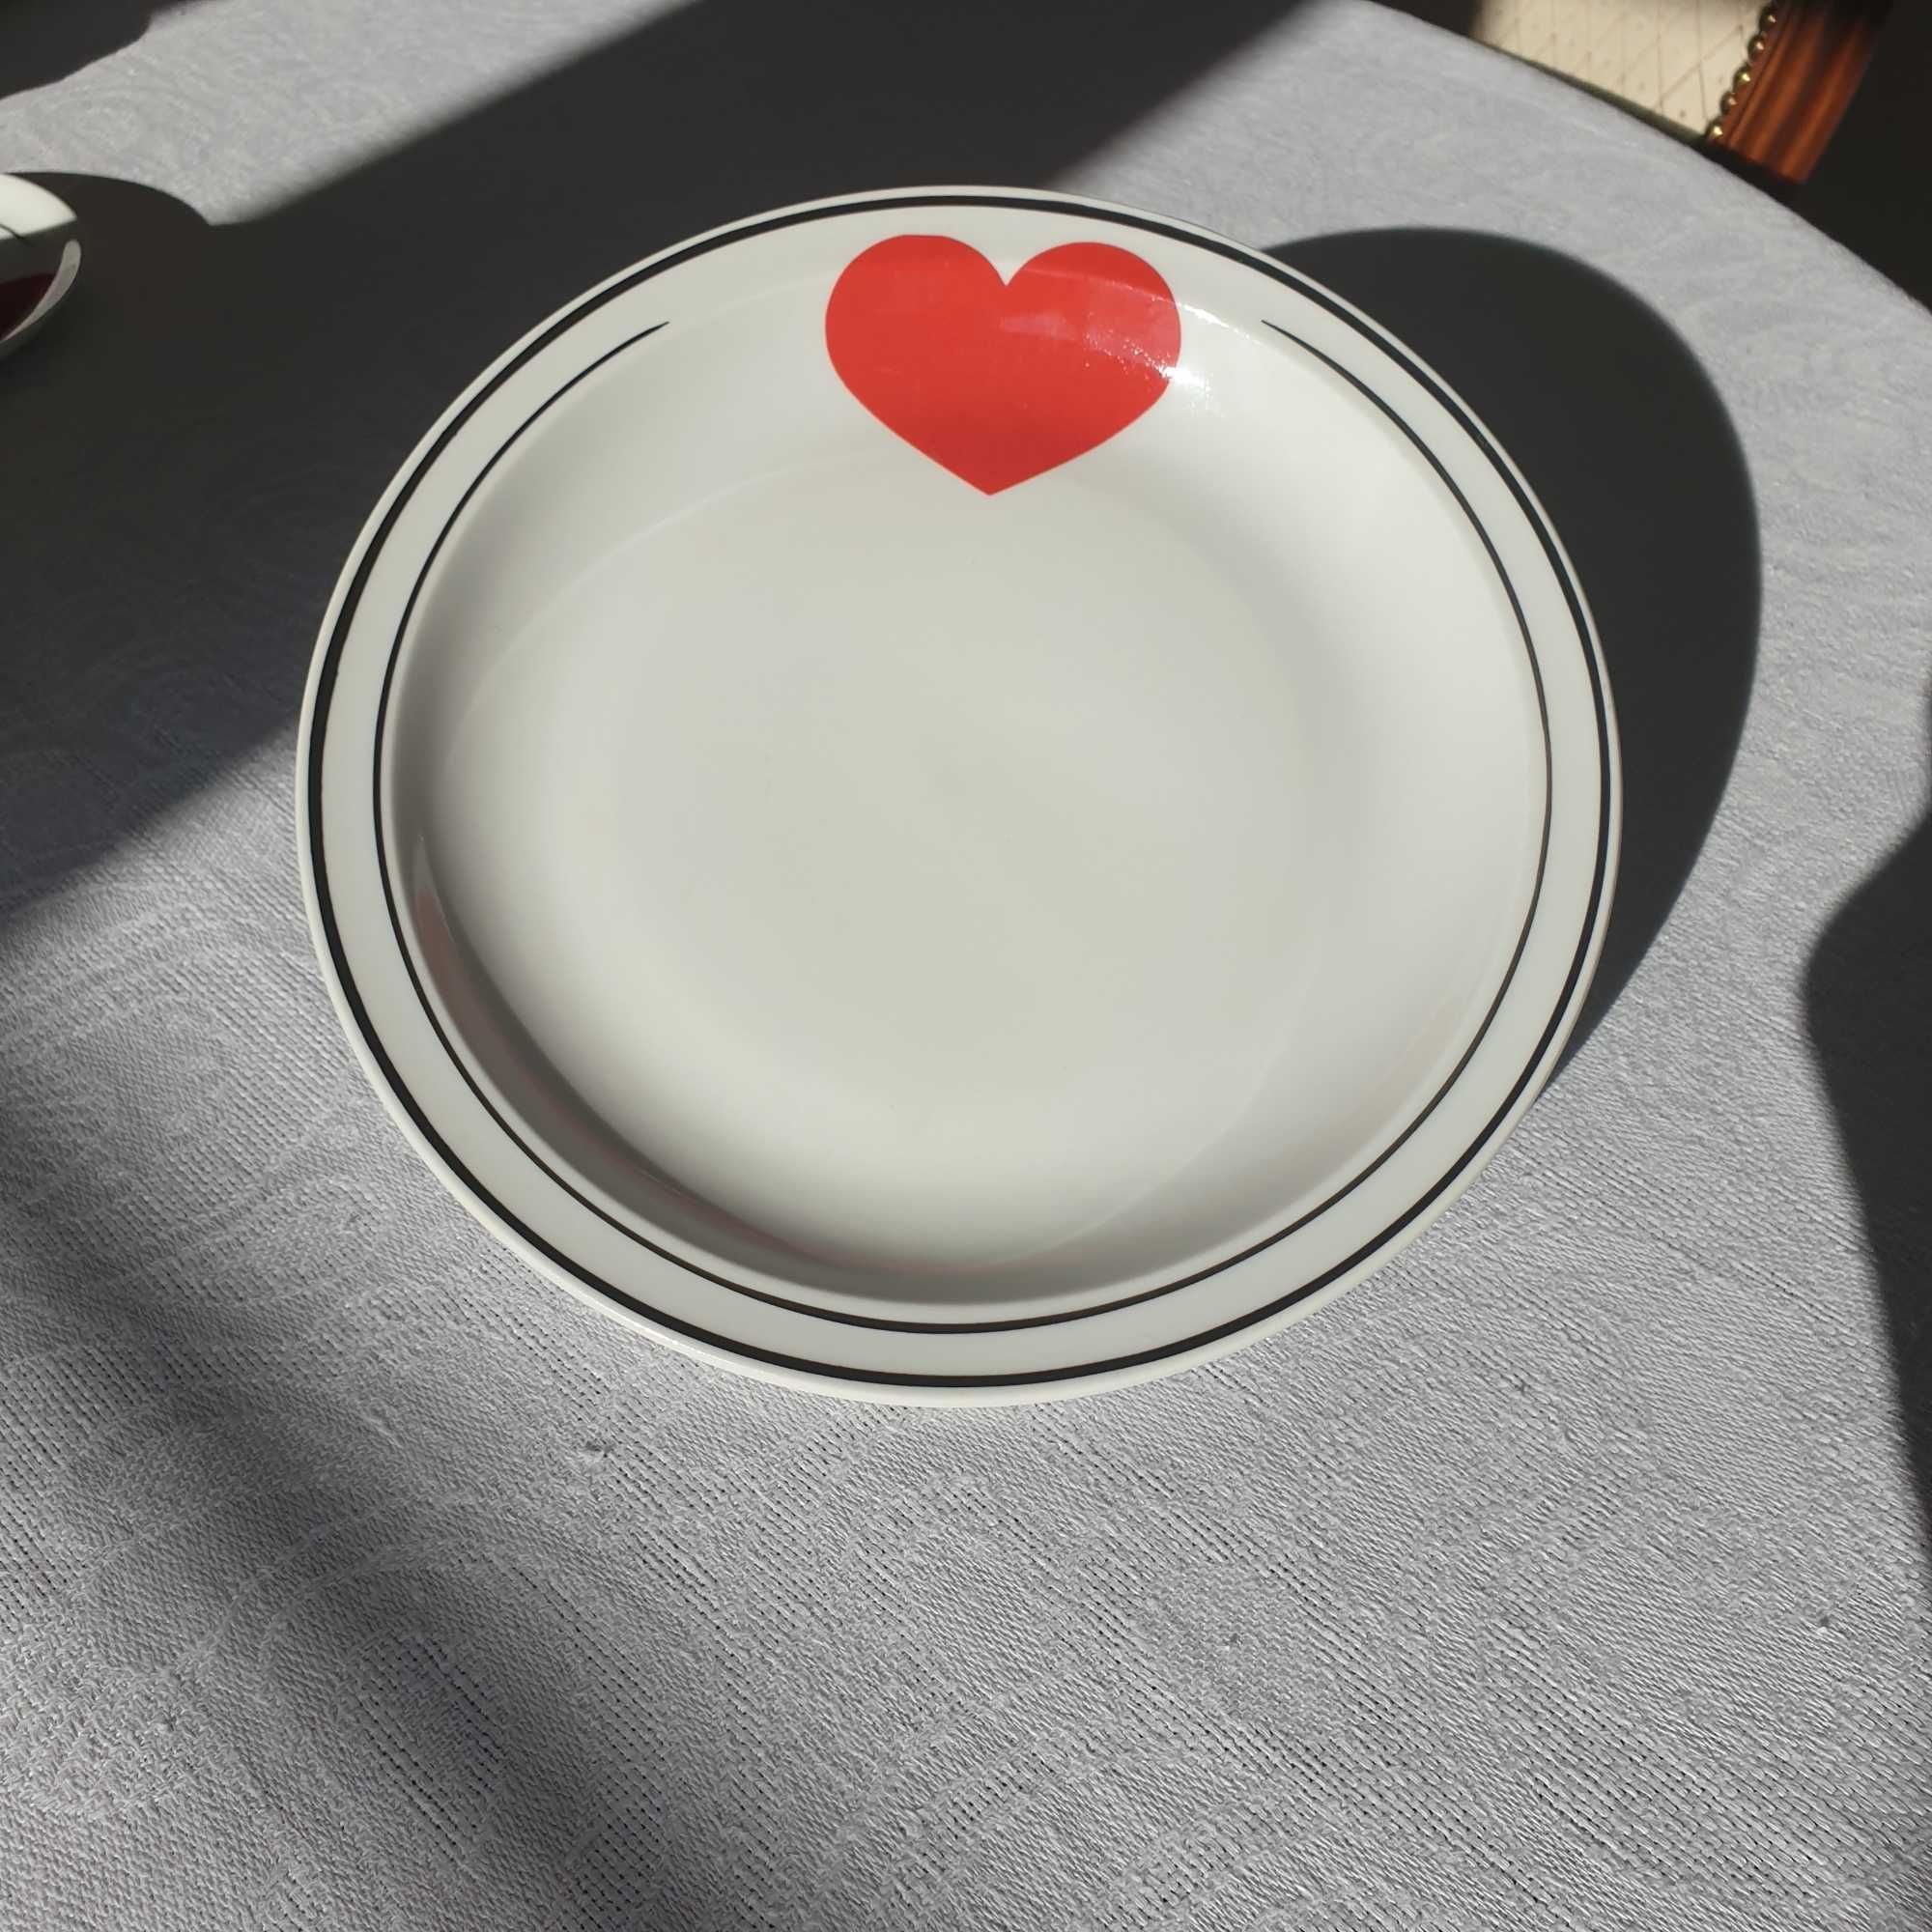 Walentynkowy komplet talerzy obiadowych z czerwonym serduszkiem.